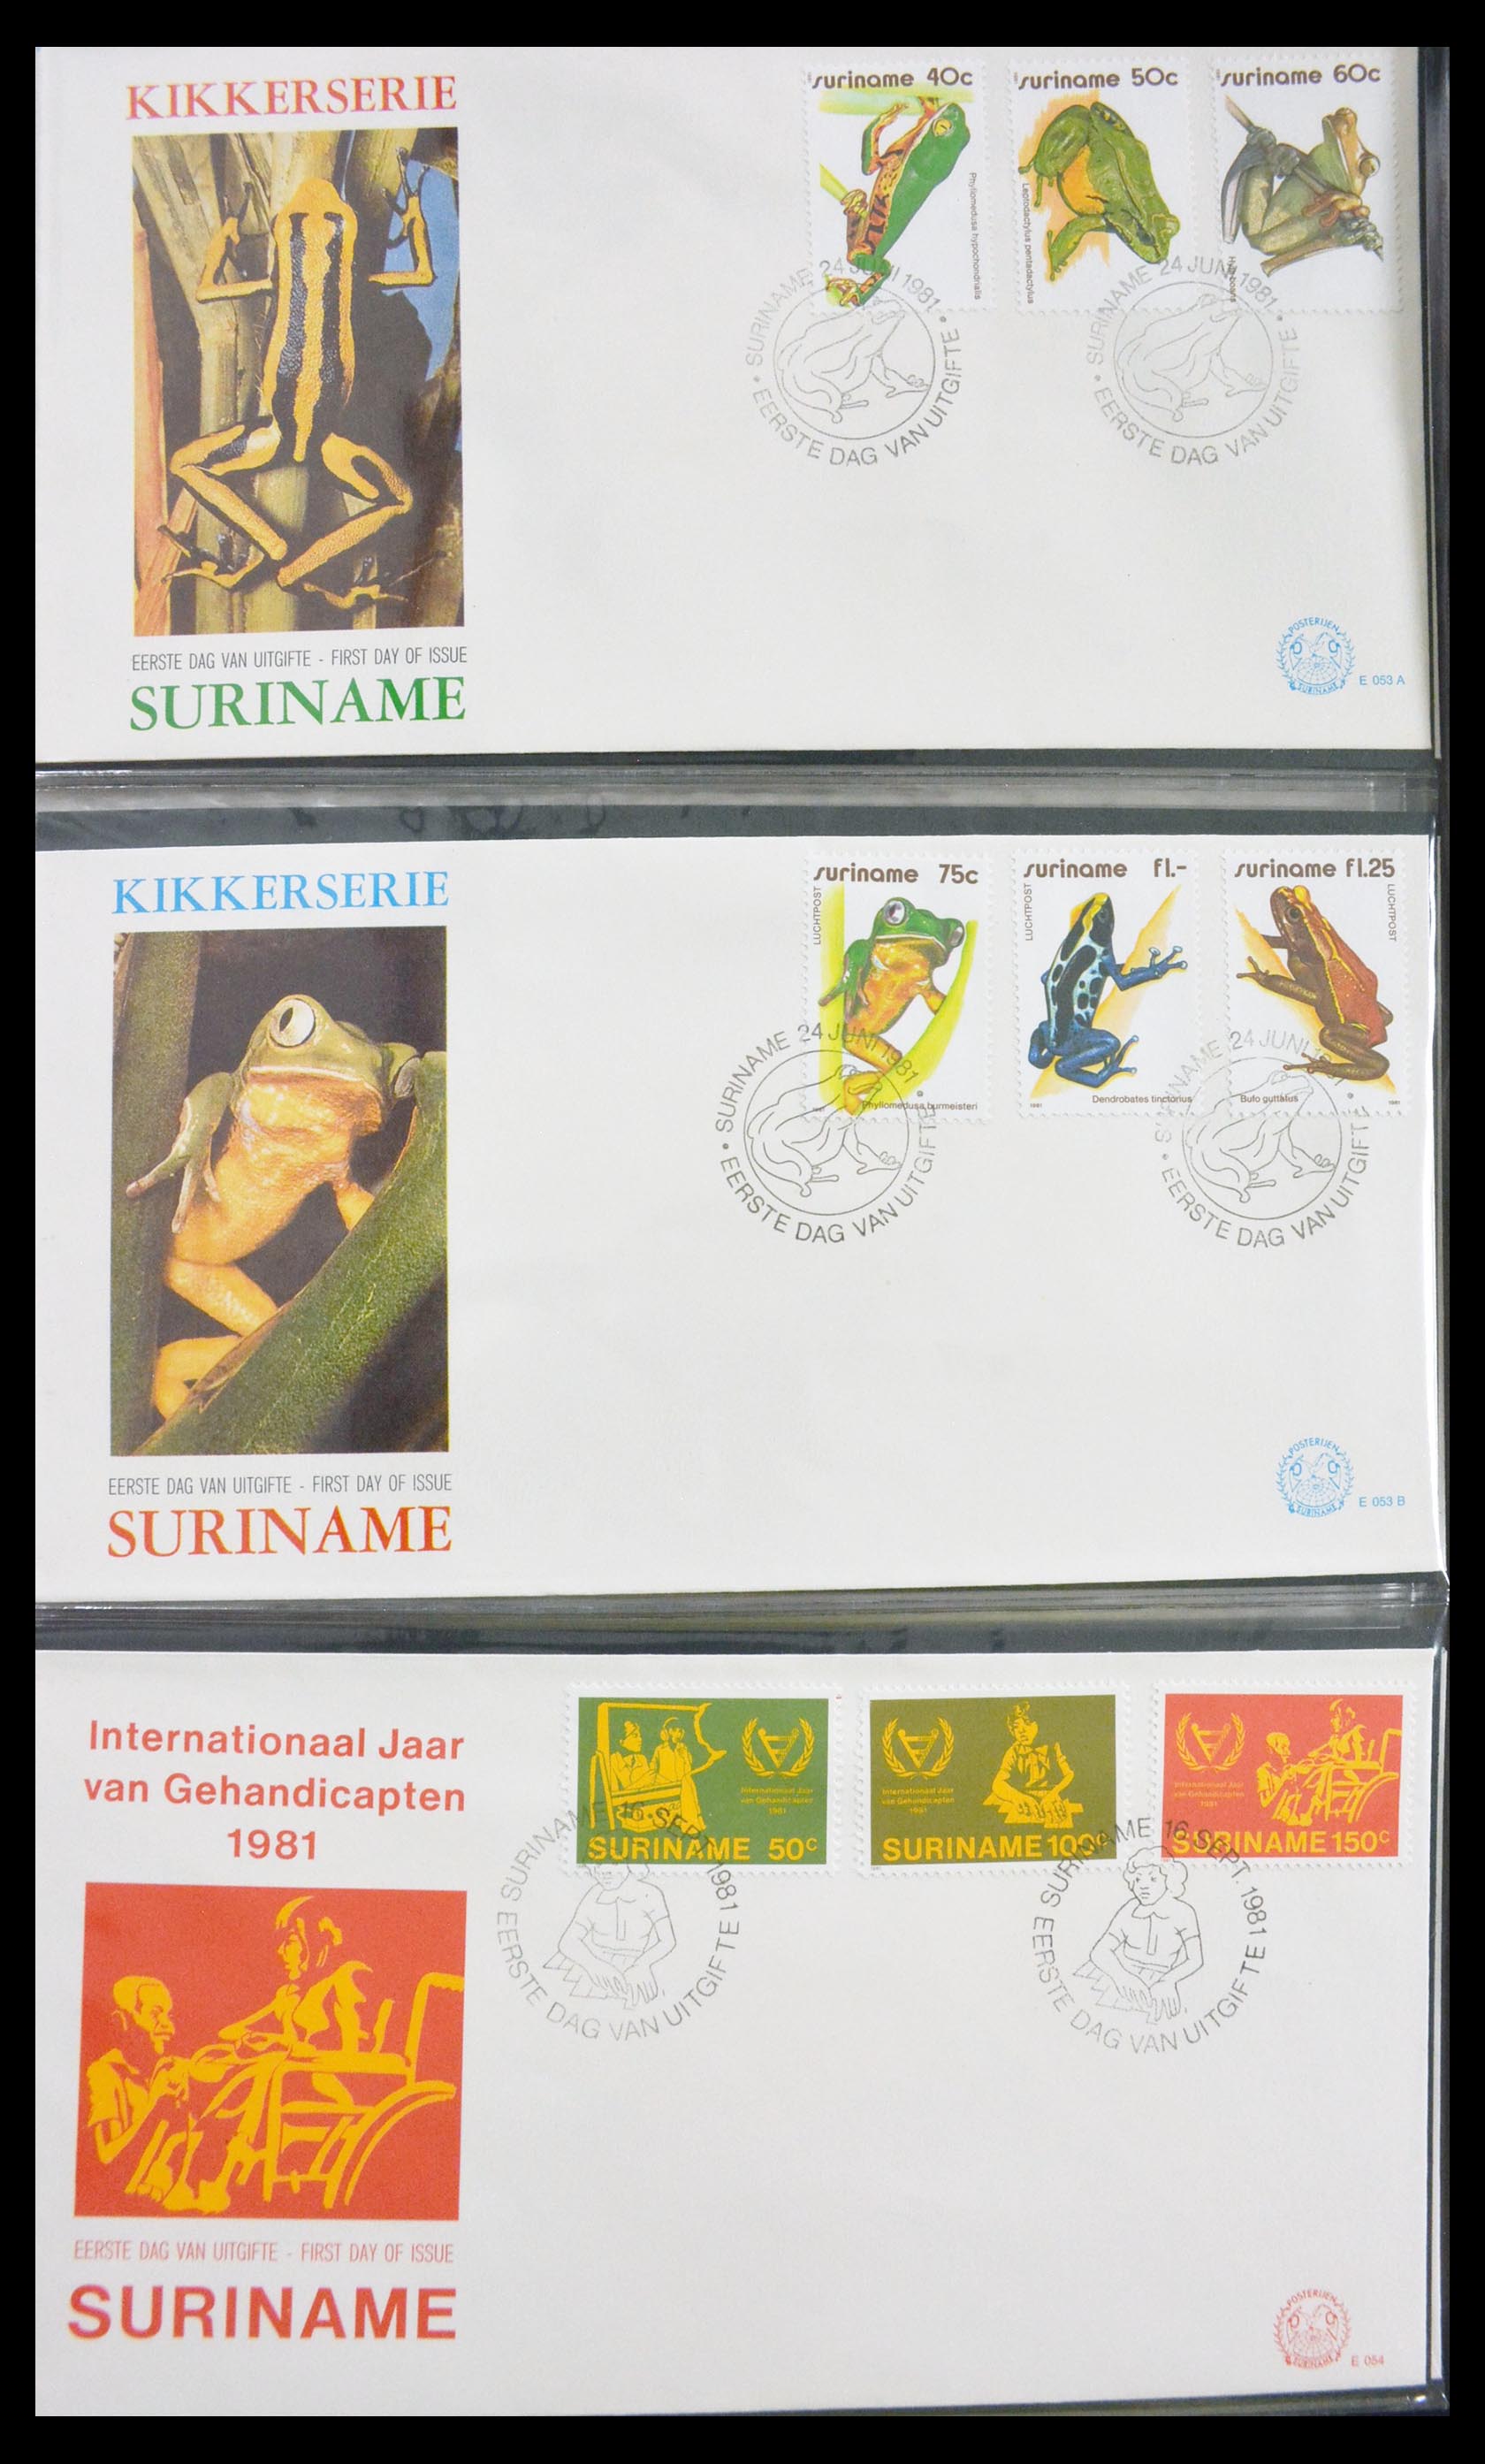 29669 031 - 29669 Suriname FDC's 1975-2011.